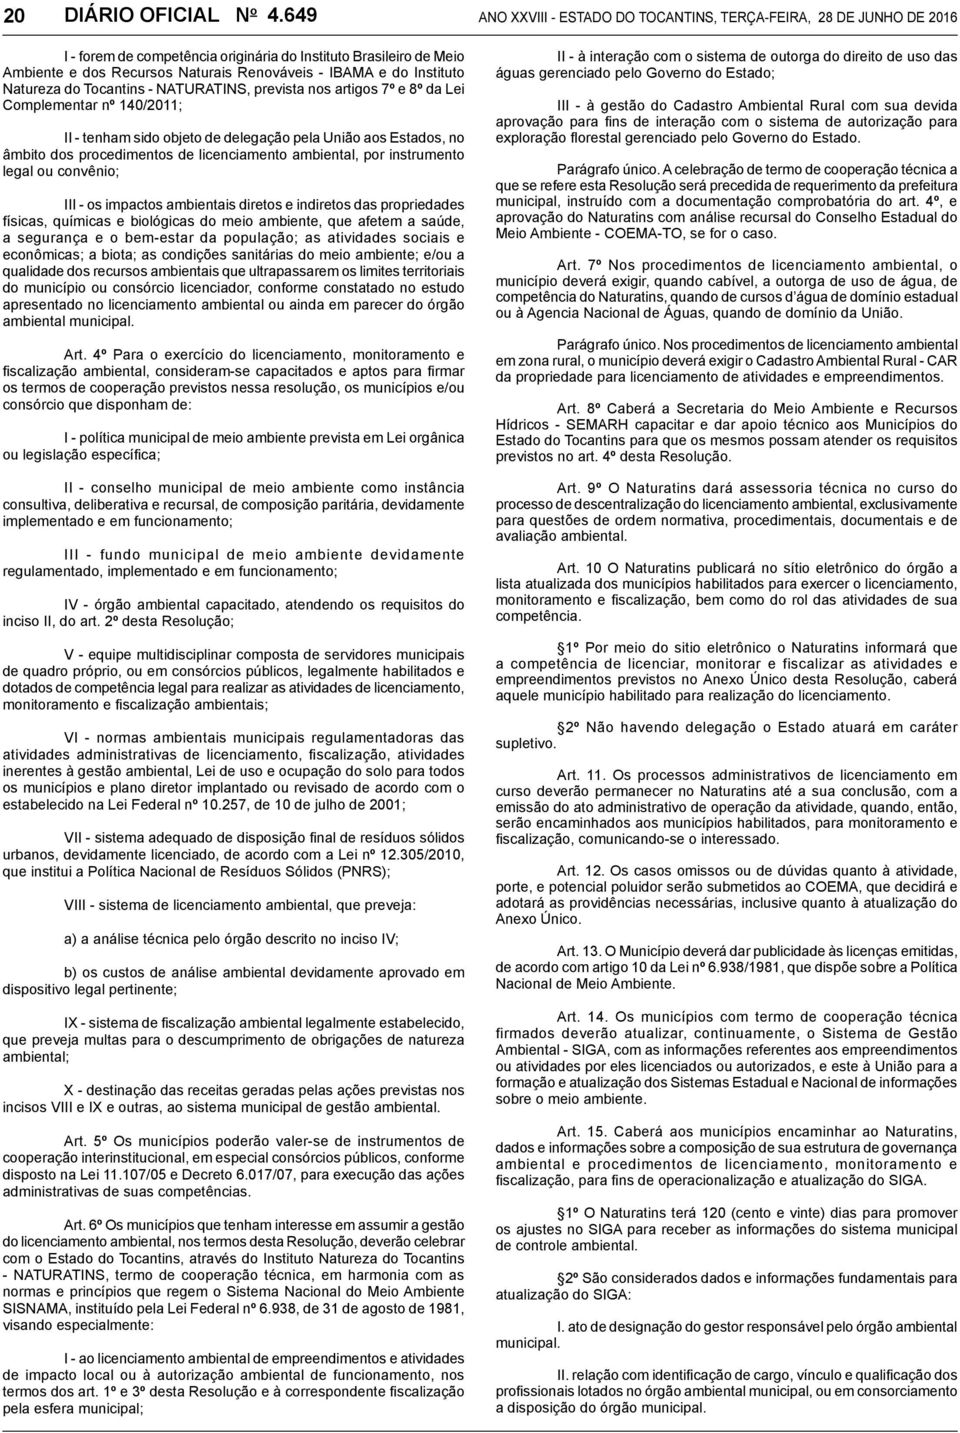 Instituto Natureza do Tocantins - NATURATINS, prevista nos artigos 7º e 8º da Lei Complementar nº 140/2011; II - tenham sido objeto de delegação pela União aos Estados, no âmbito dos procedimentos de